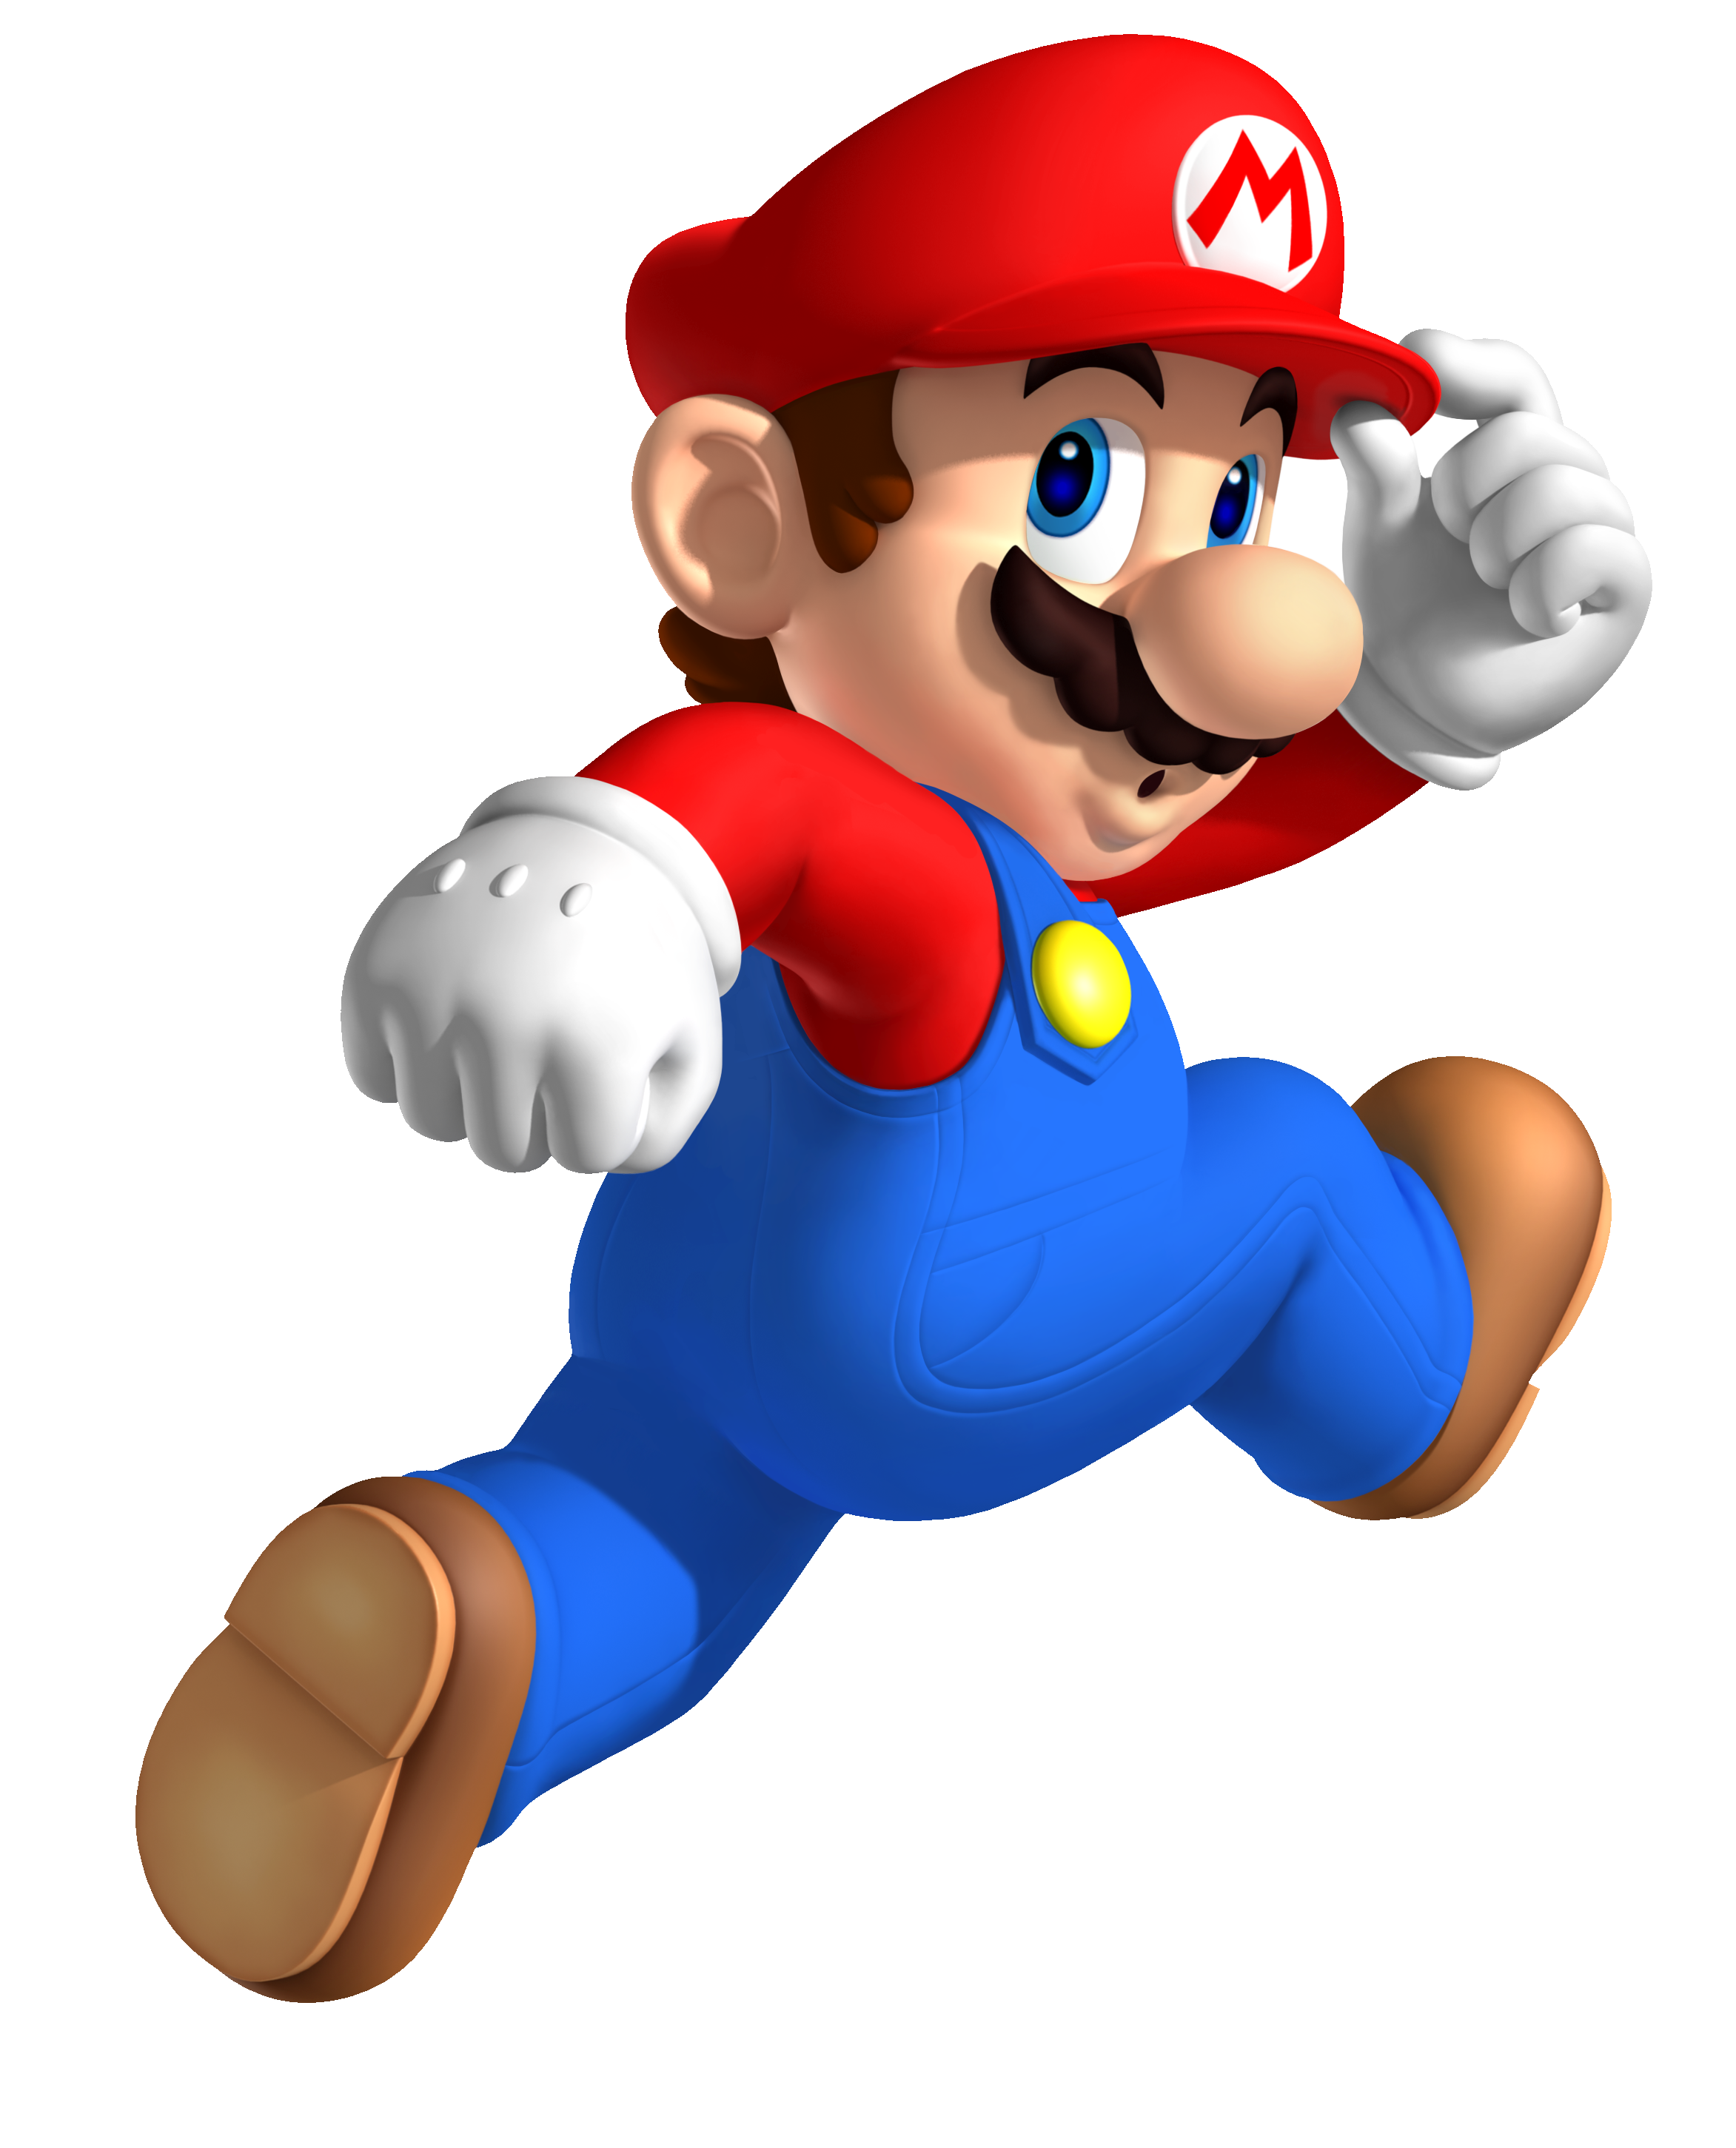 Jumping clipart cartoon character. Mario characters at getdrawings